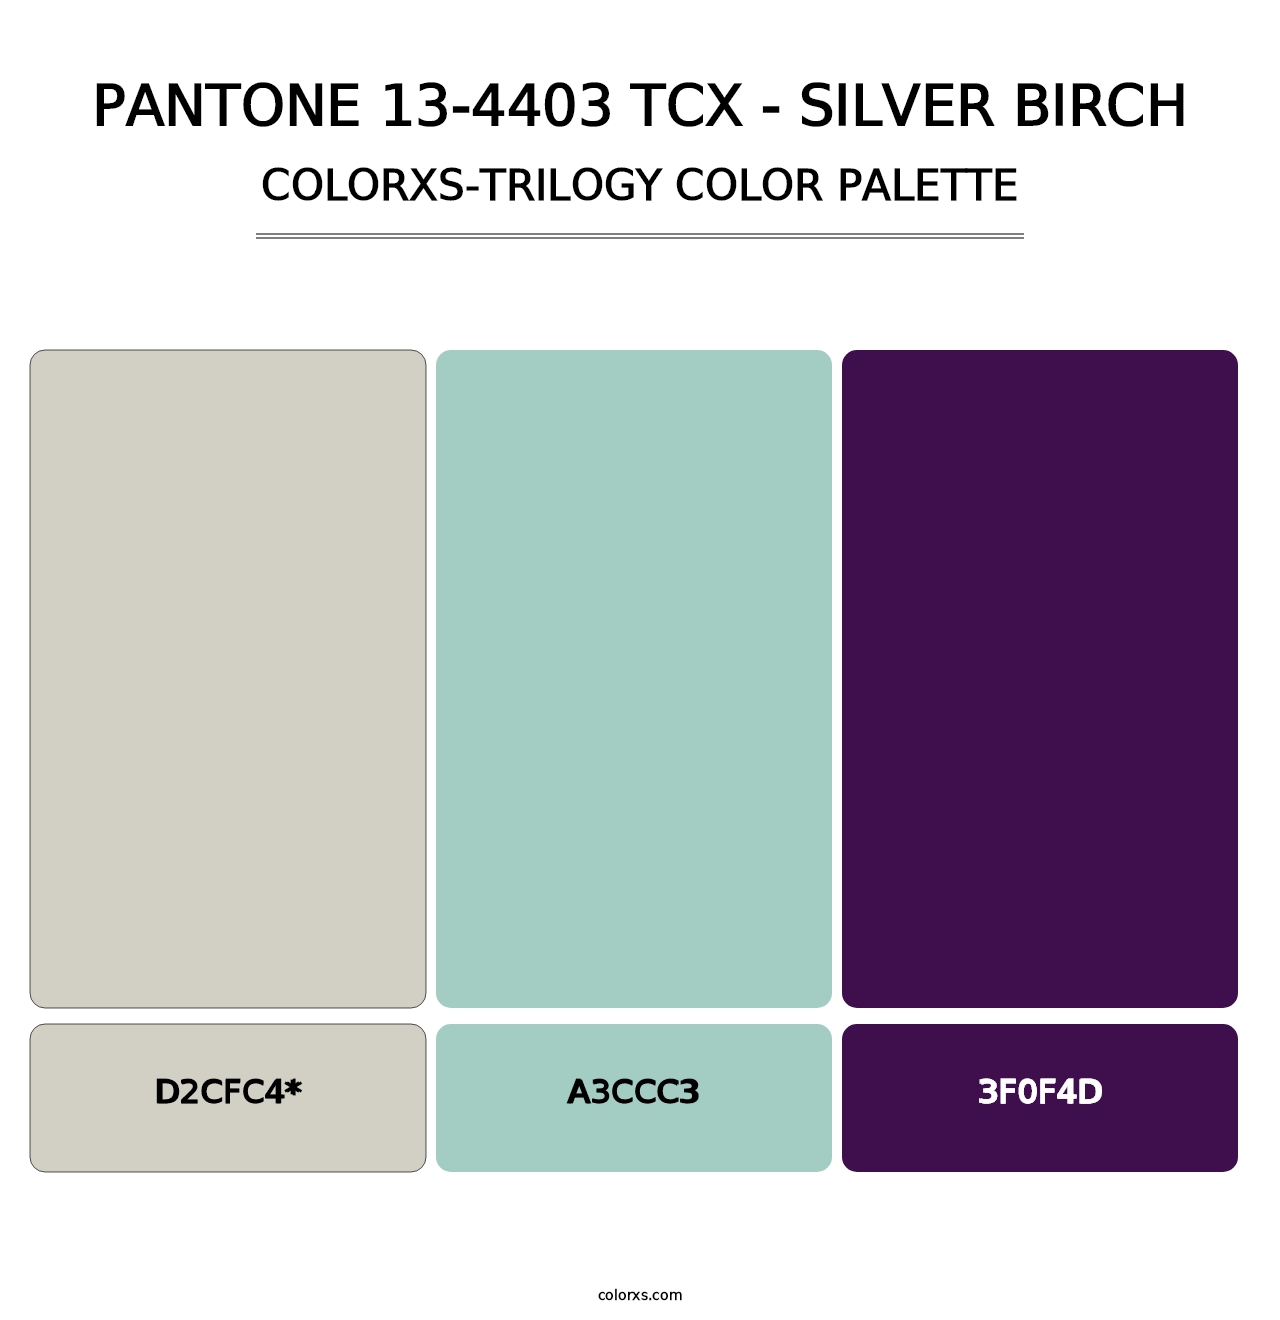 PANTONE 13-4403 TCX - Silver Birch - Colorxs Trilogy Palette